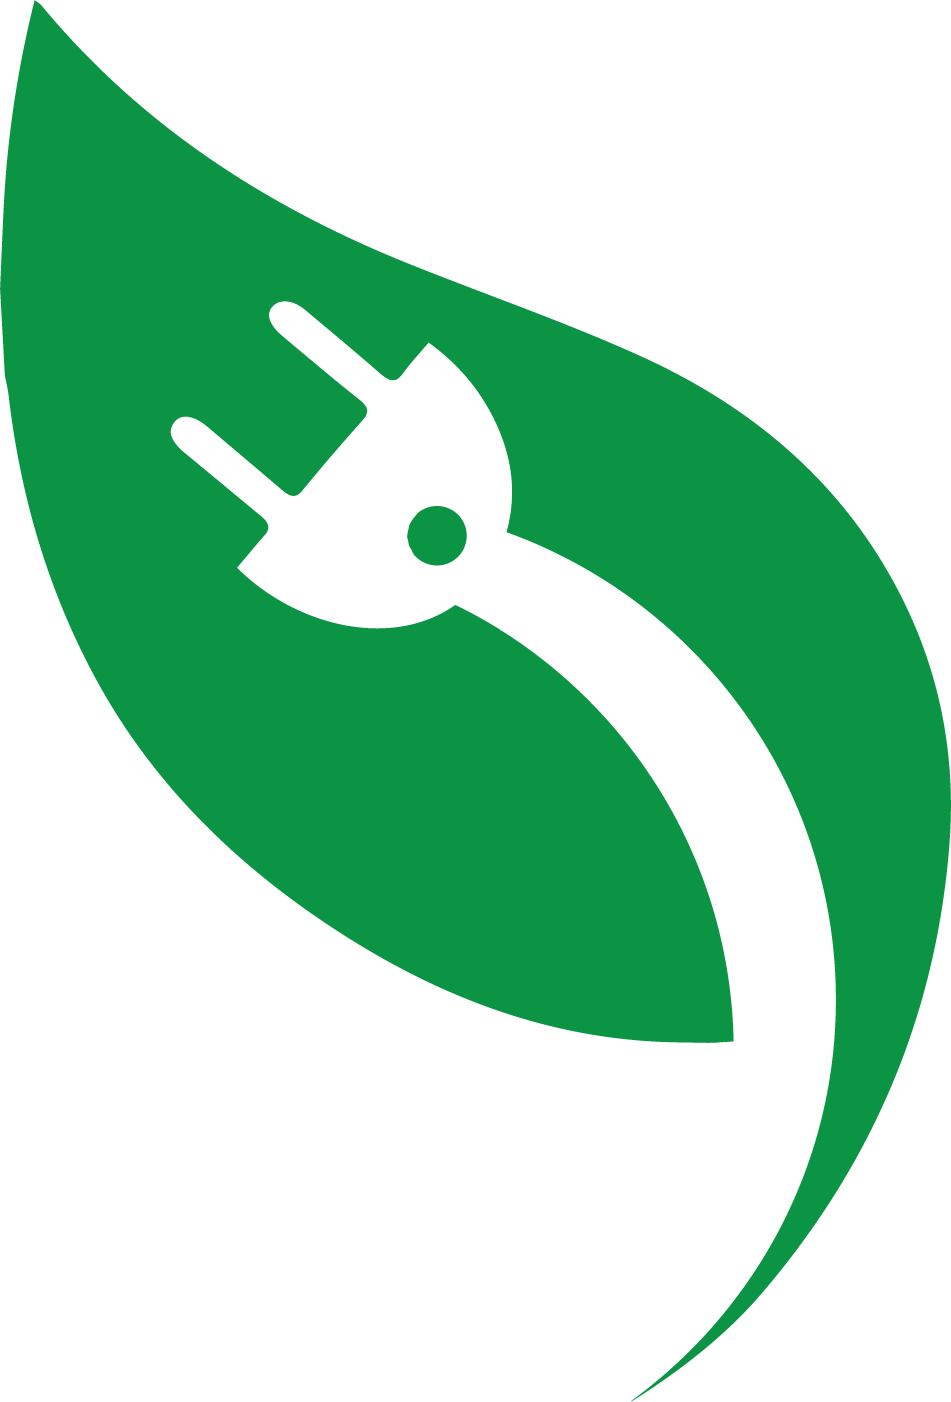 myEVcharger Logo (leaf)